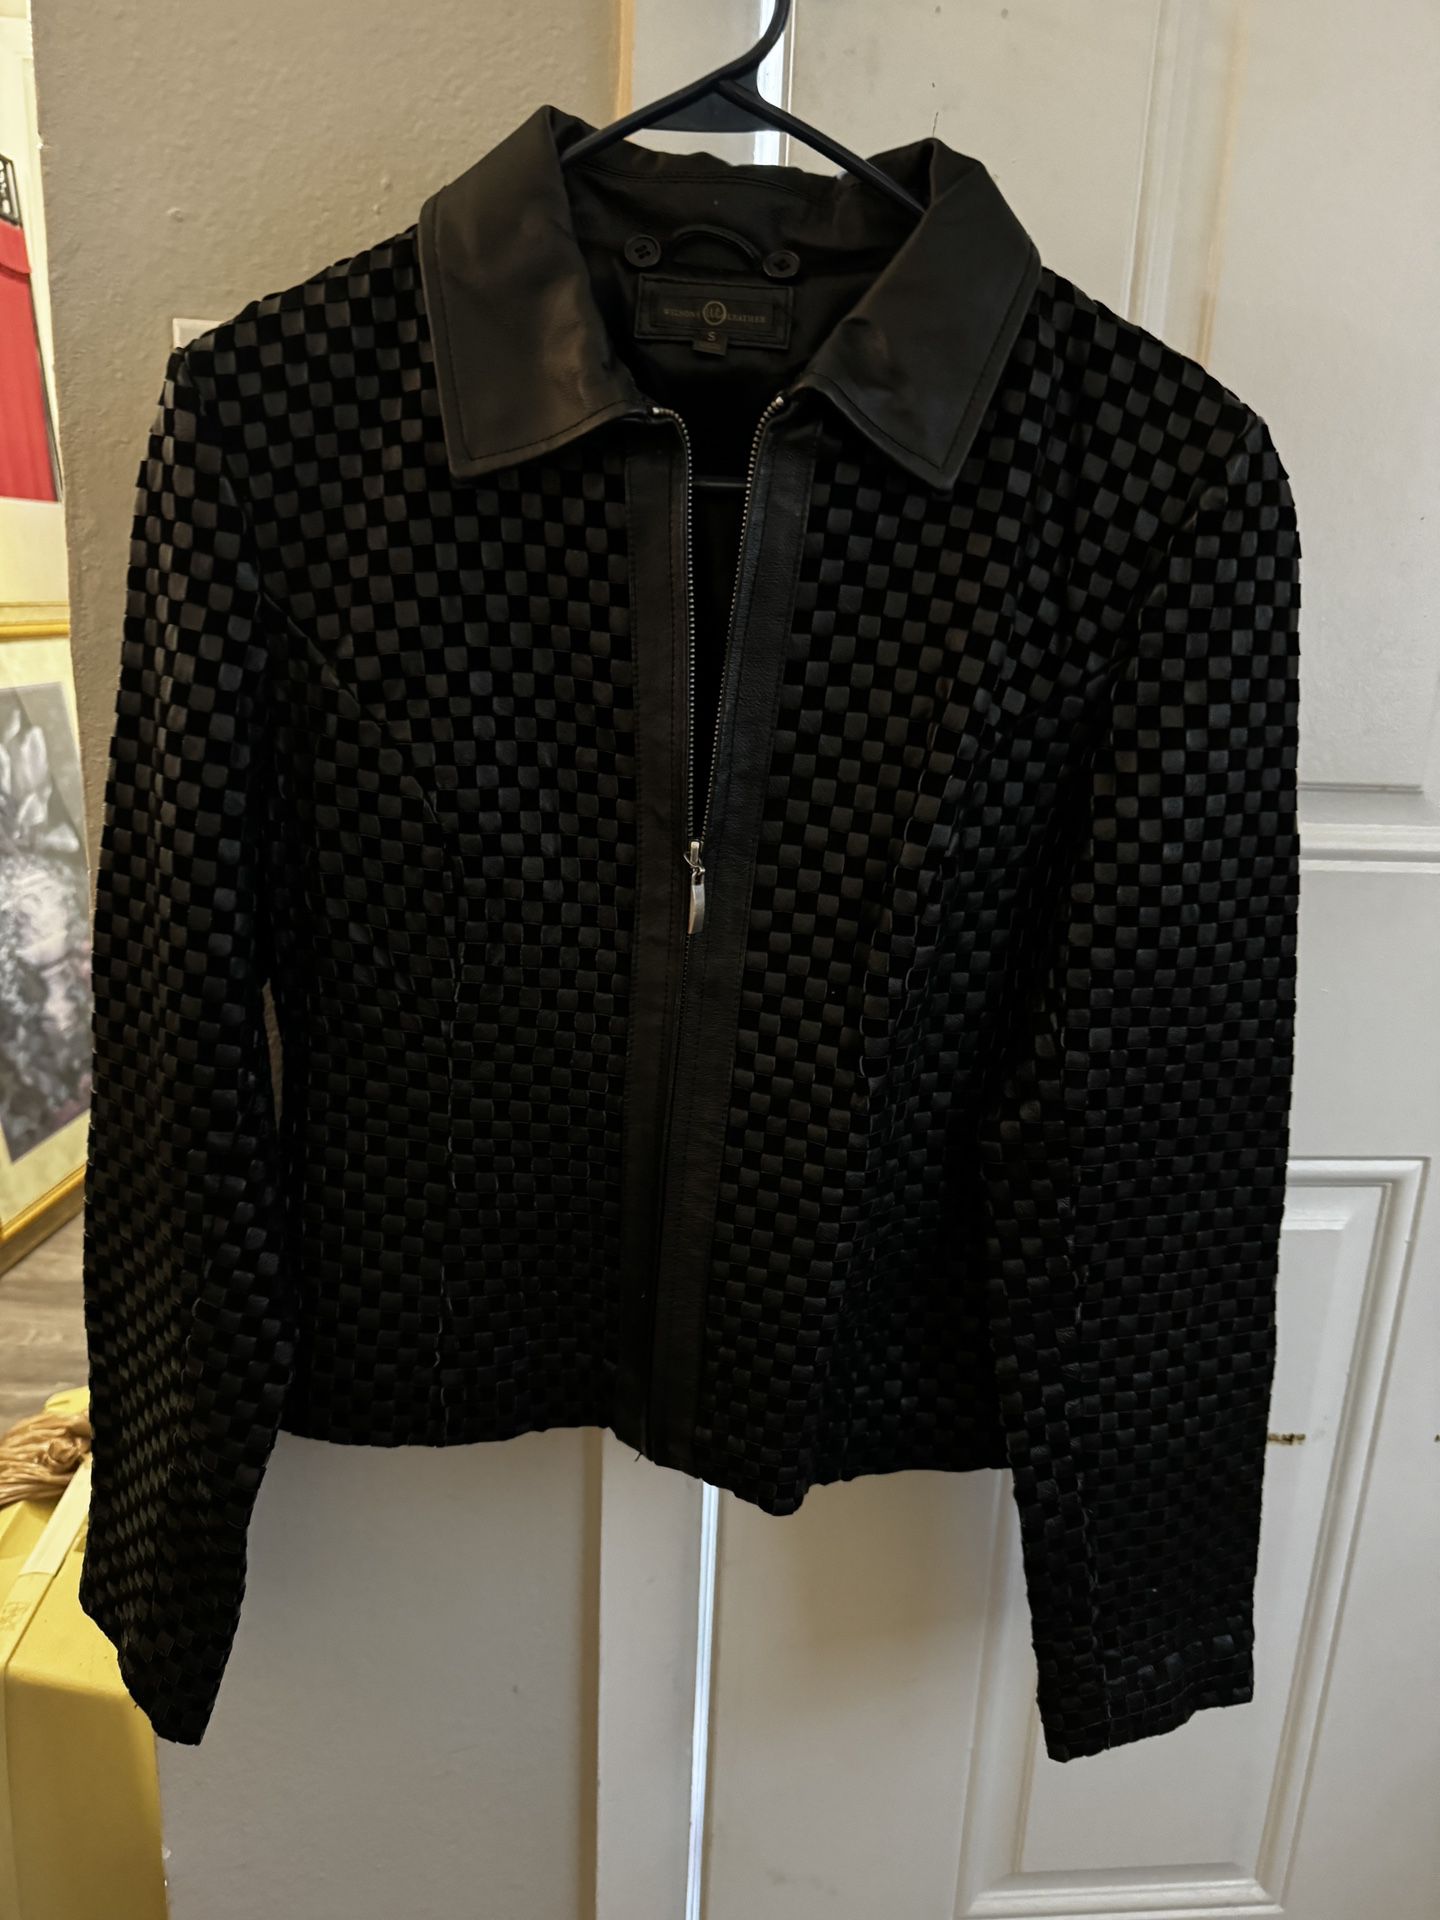 NWOT Gorgeous Black Leather Jacket!!